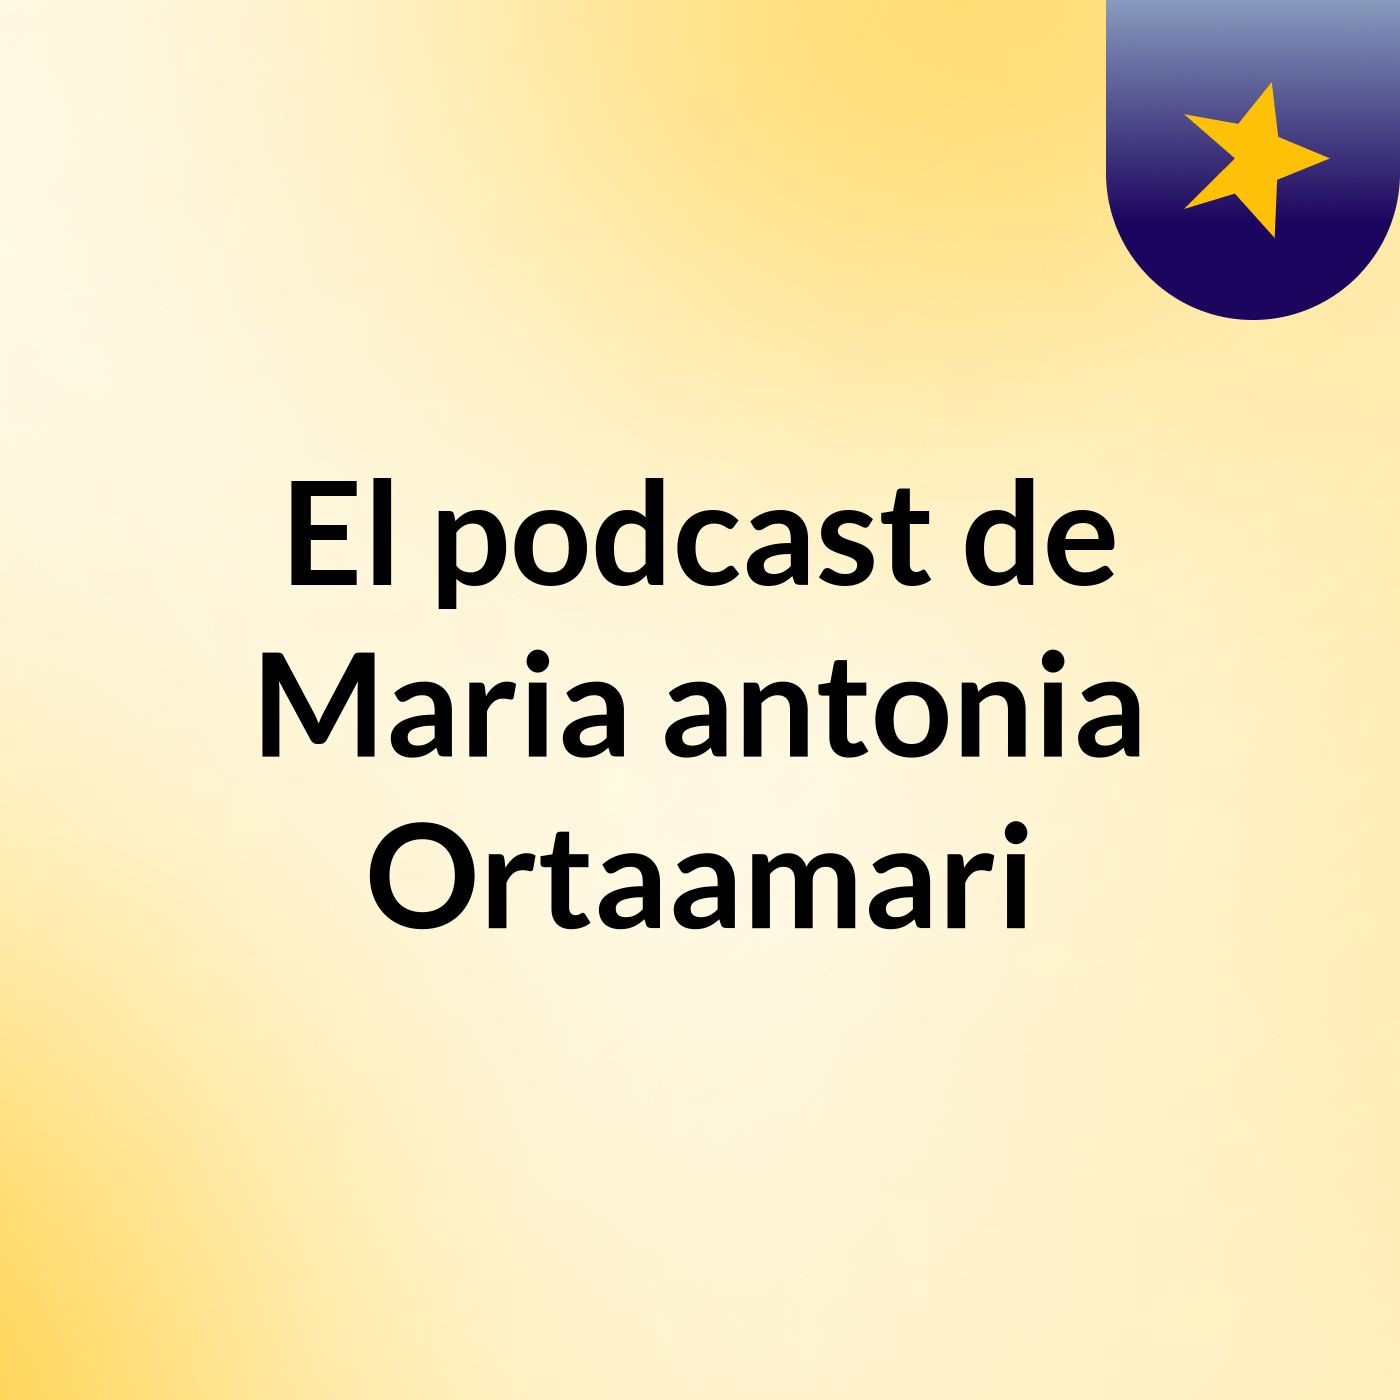 El podcast de Maria antonia Ortaamari